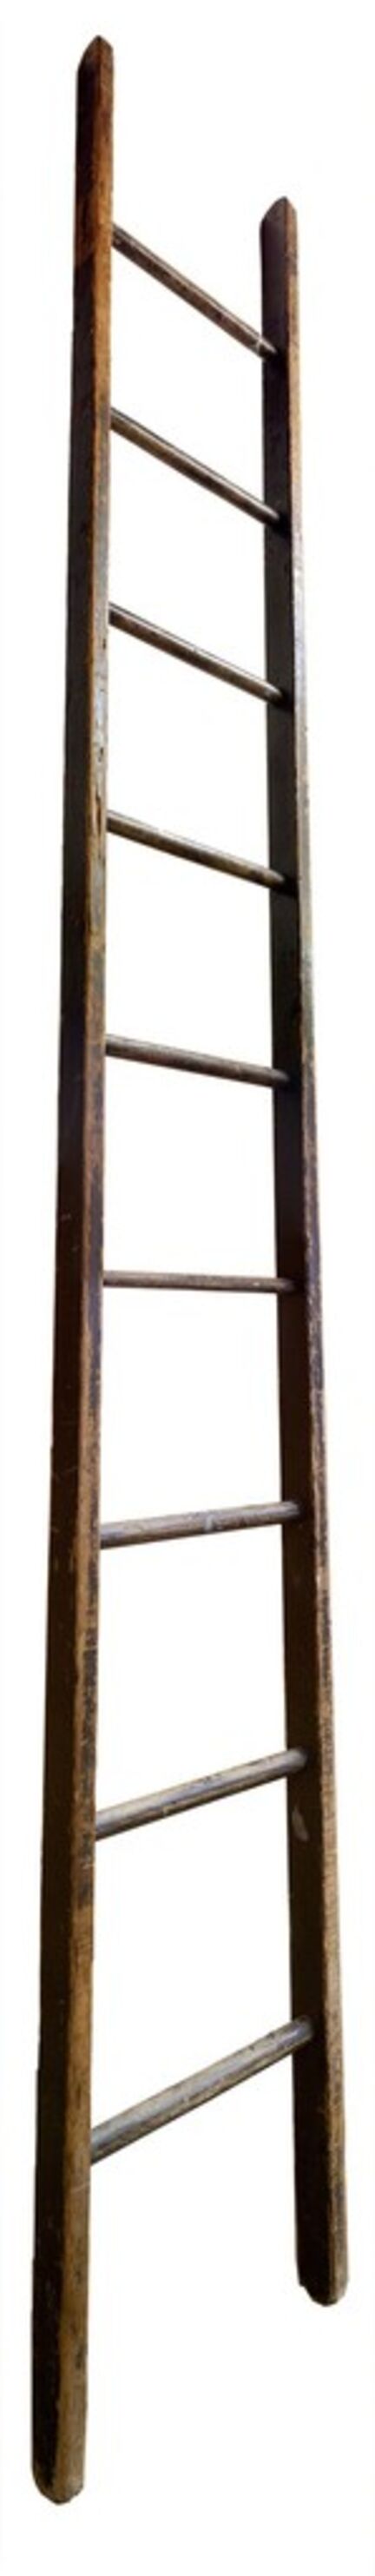 Jennifer Williams, ‘Large Ladder: Wooden’, 2014